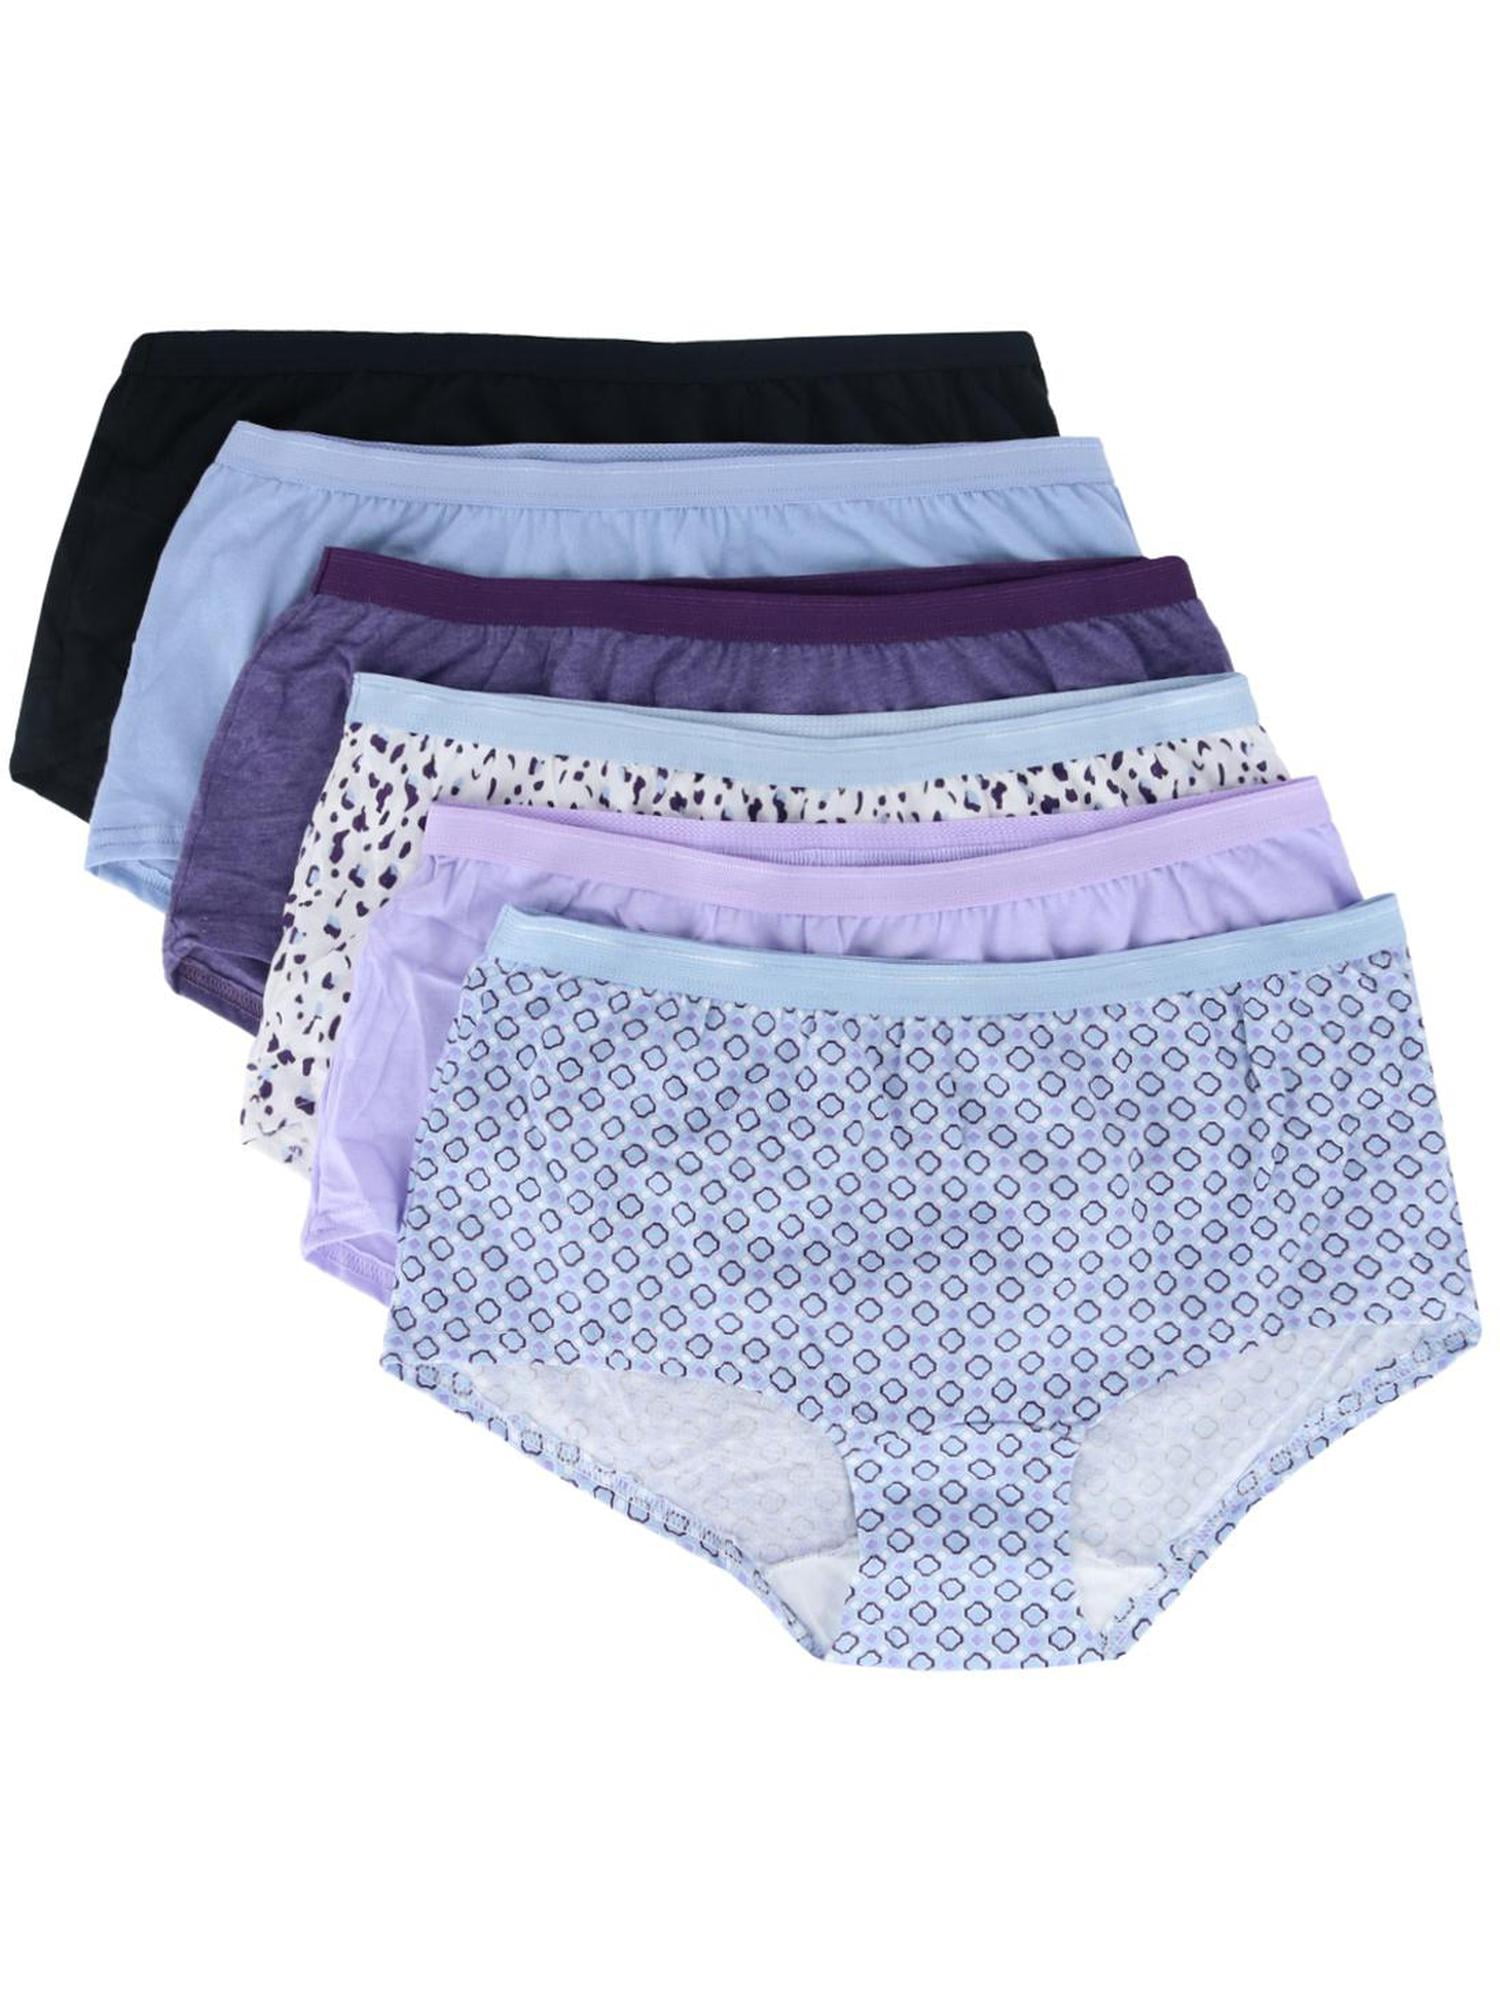 Fruit of the Loom Women's Shortie Underwear, 6 Pack, Sizes 5-9